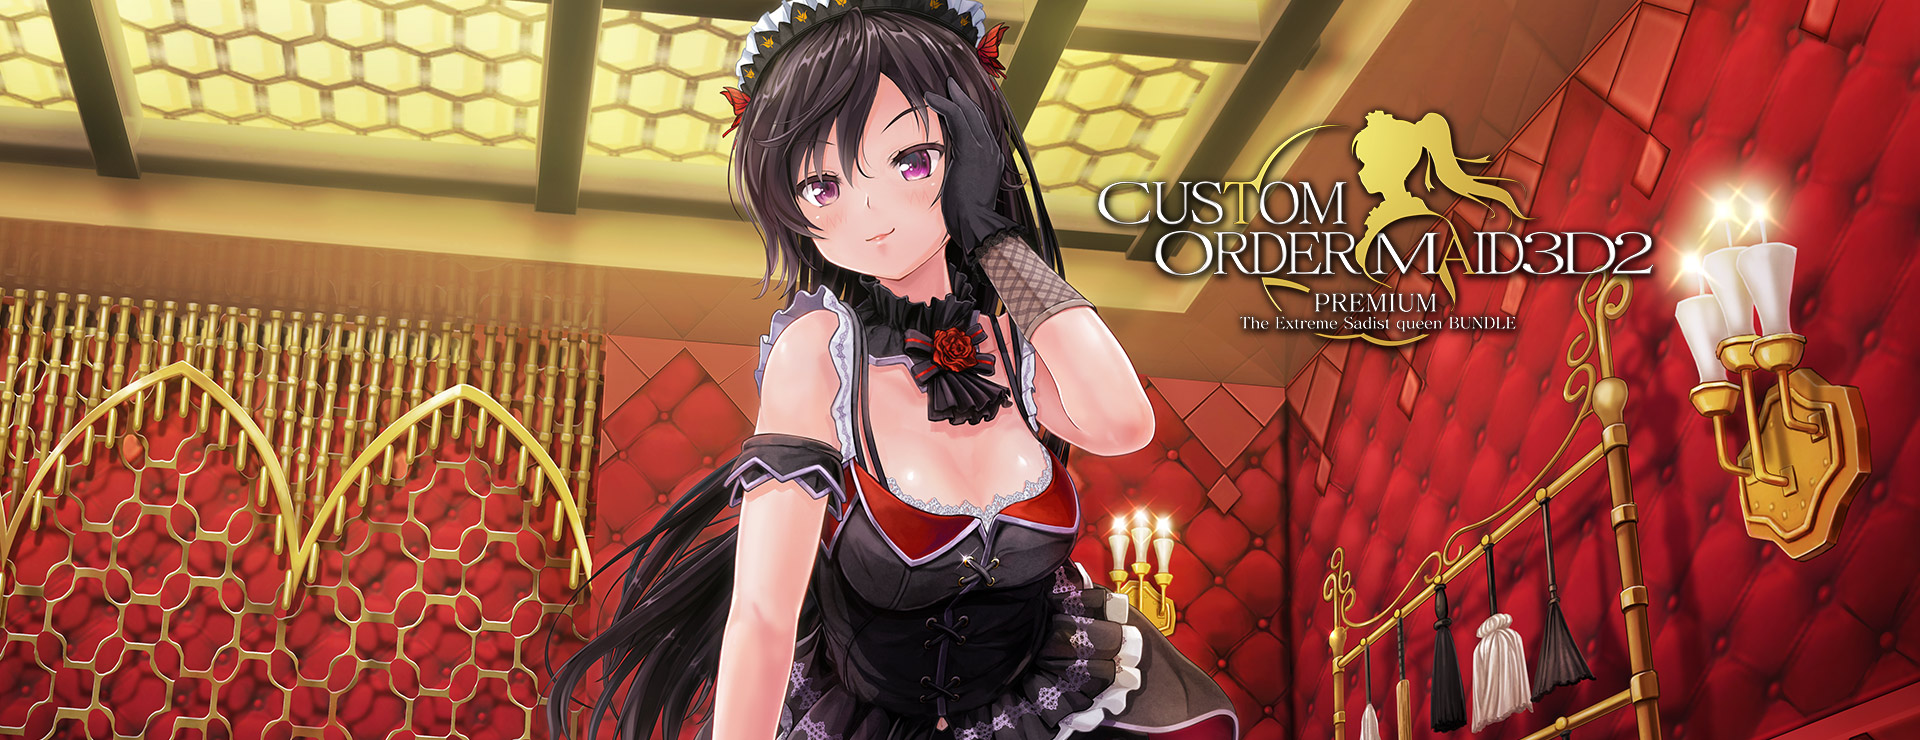 Custom Order Maid 3D2: Extreme Sadist Queen Bundle - Simulación Juego